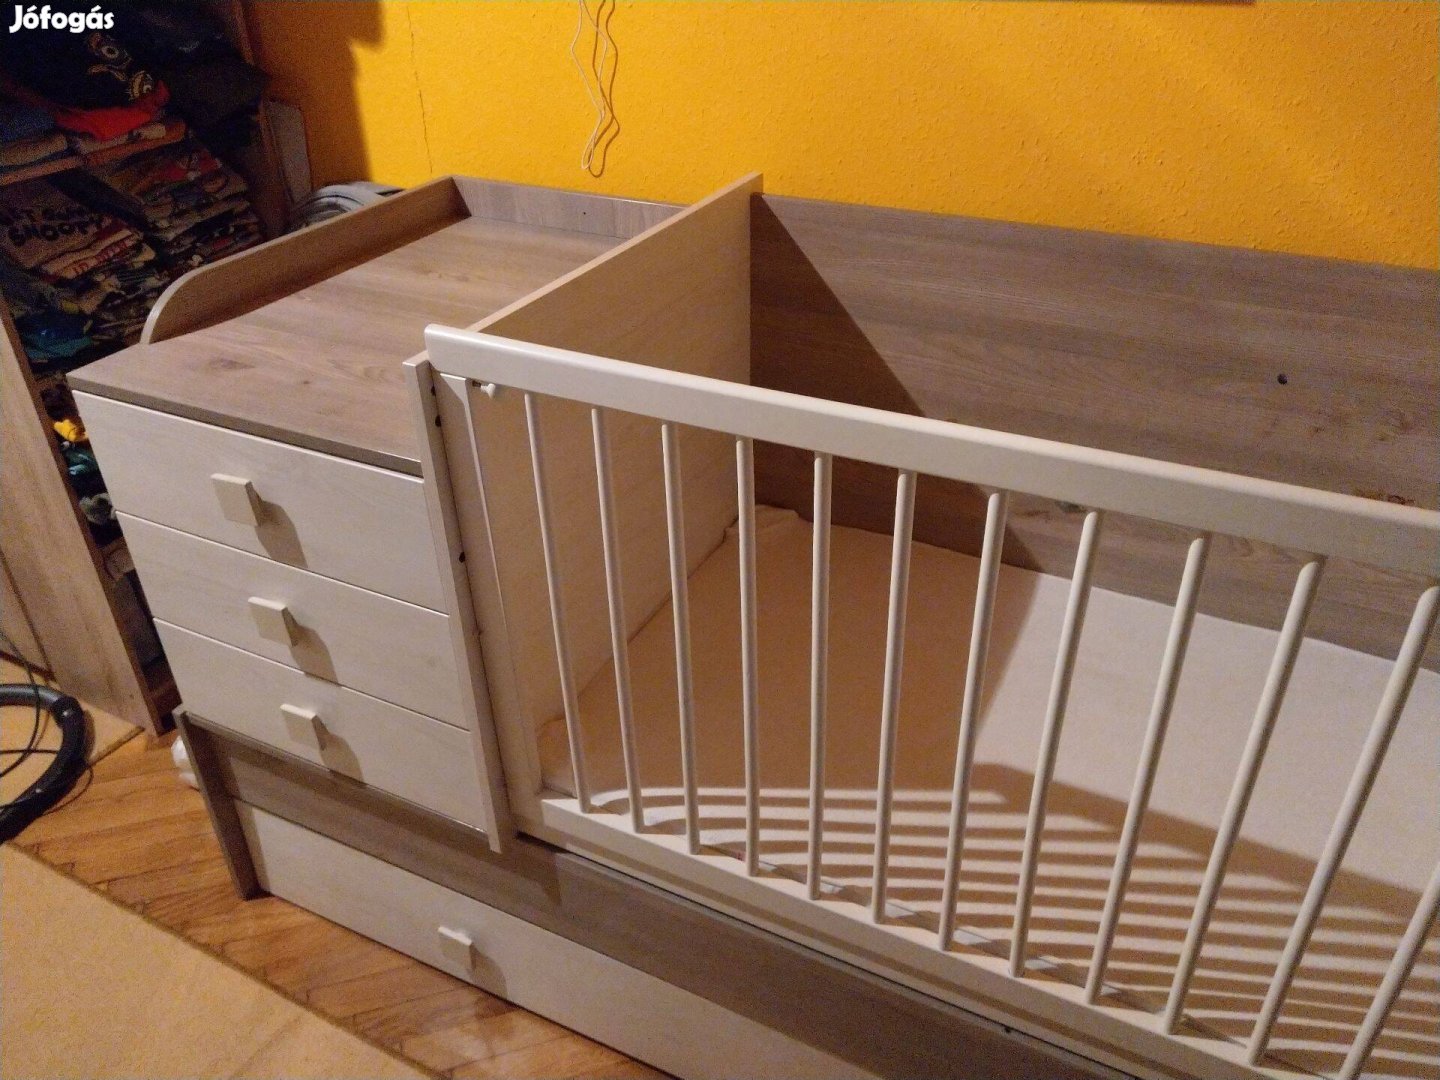 Viki műkombi gyerekágy - később asztalra, szekrényre és ágyra bontható